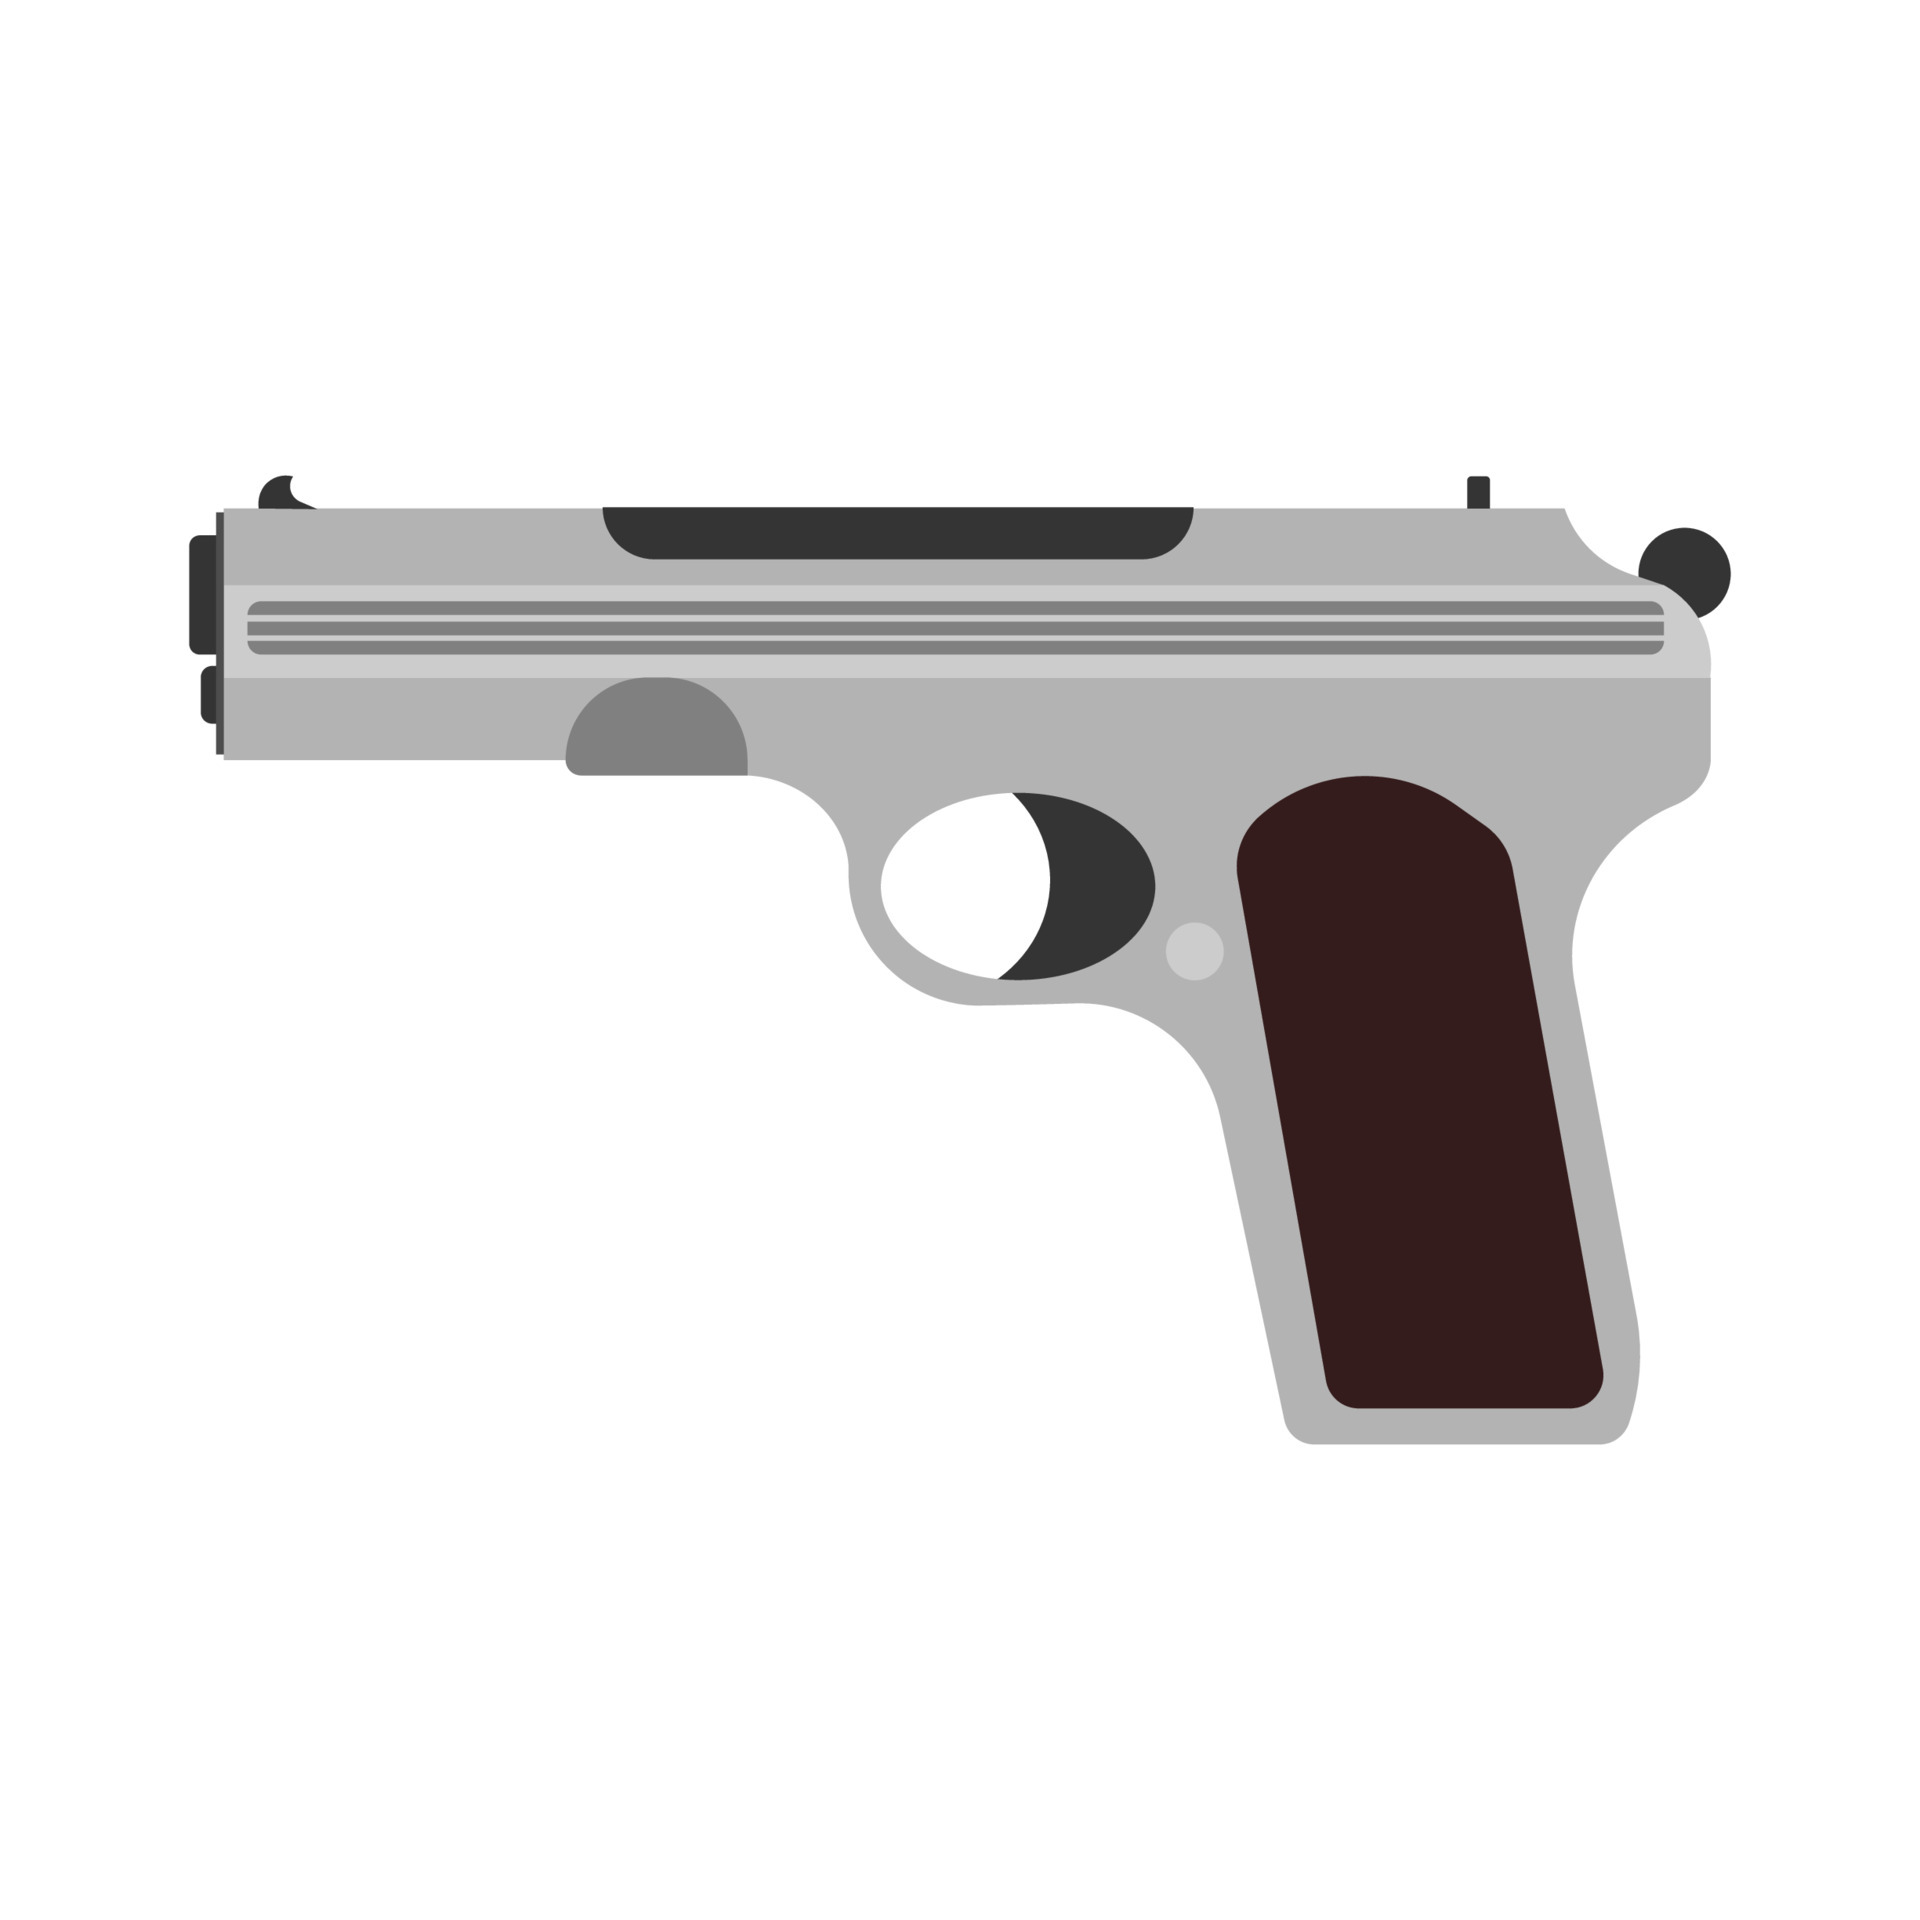 Contorno Perigo Arma De Fogo - Gráfico vetorial grátis no Pixabay - Pixabay